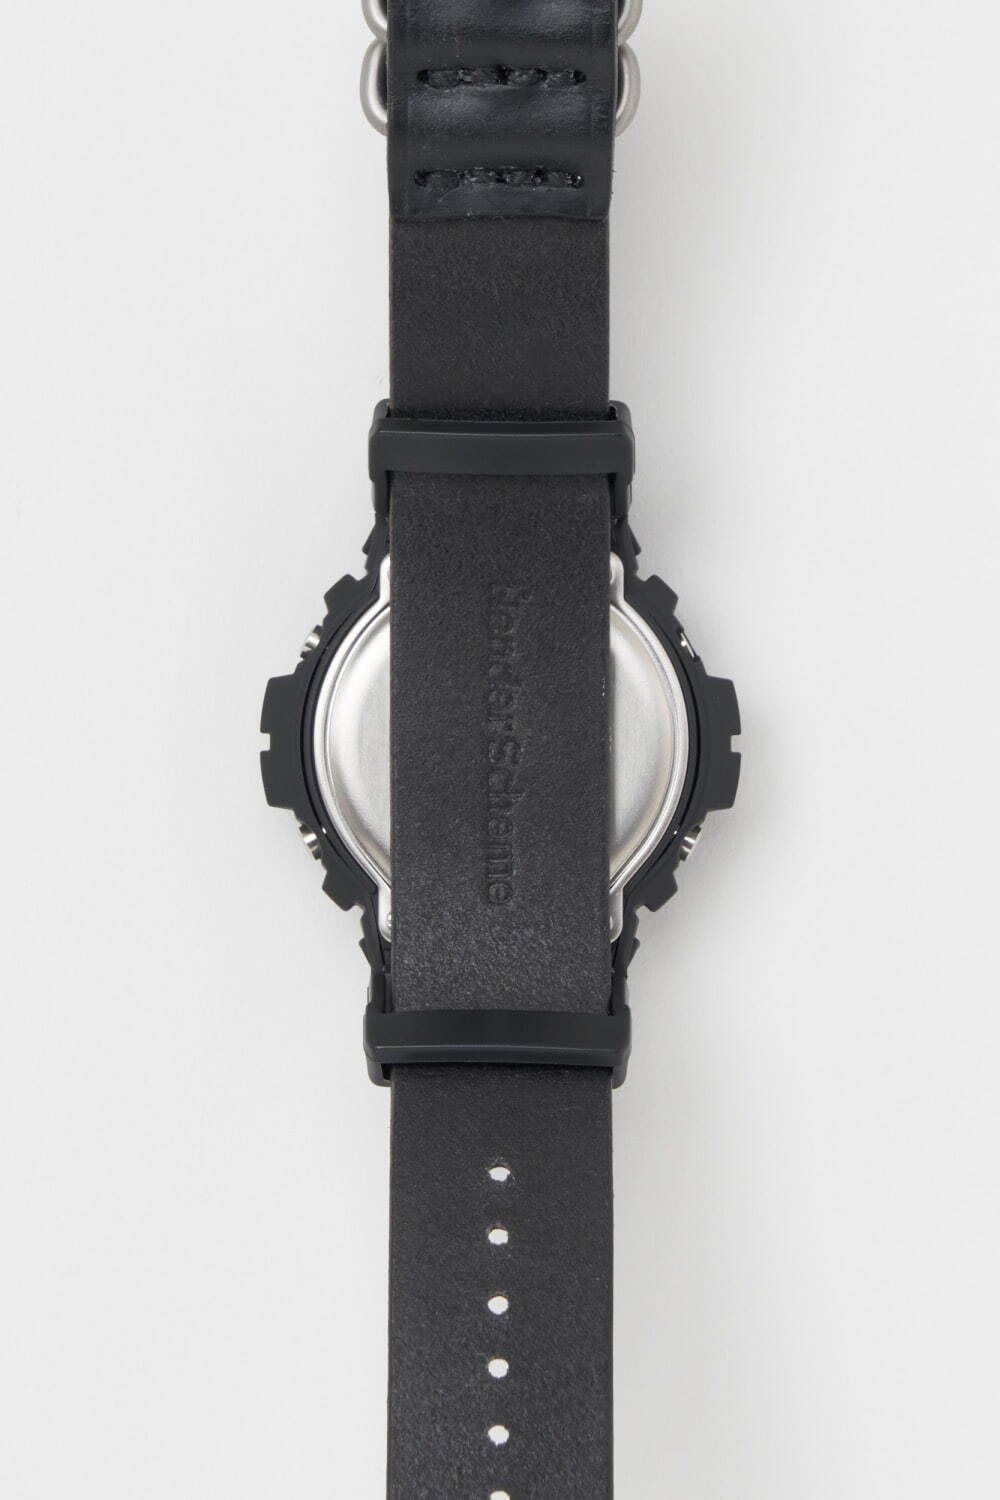 エンダースキーマ×G-SHOCKの腕時計第3弾、ブライドルレザーを用いた